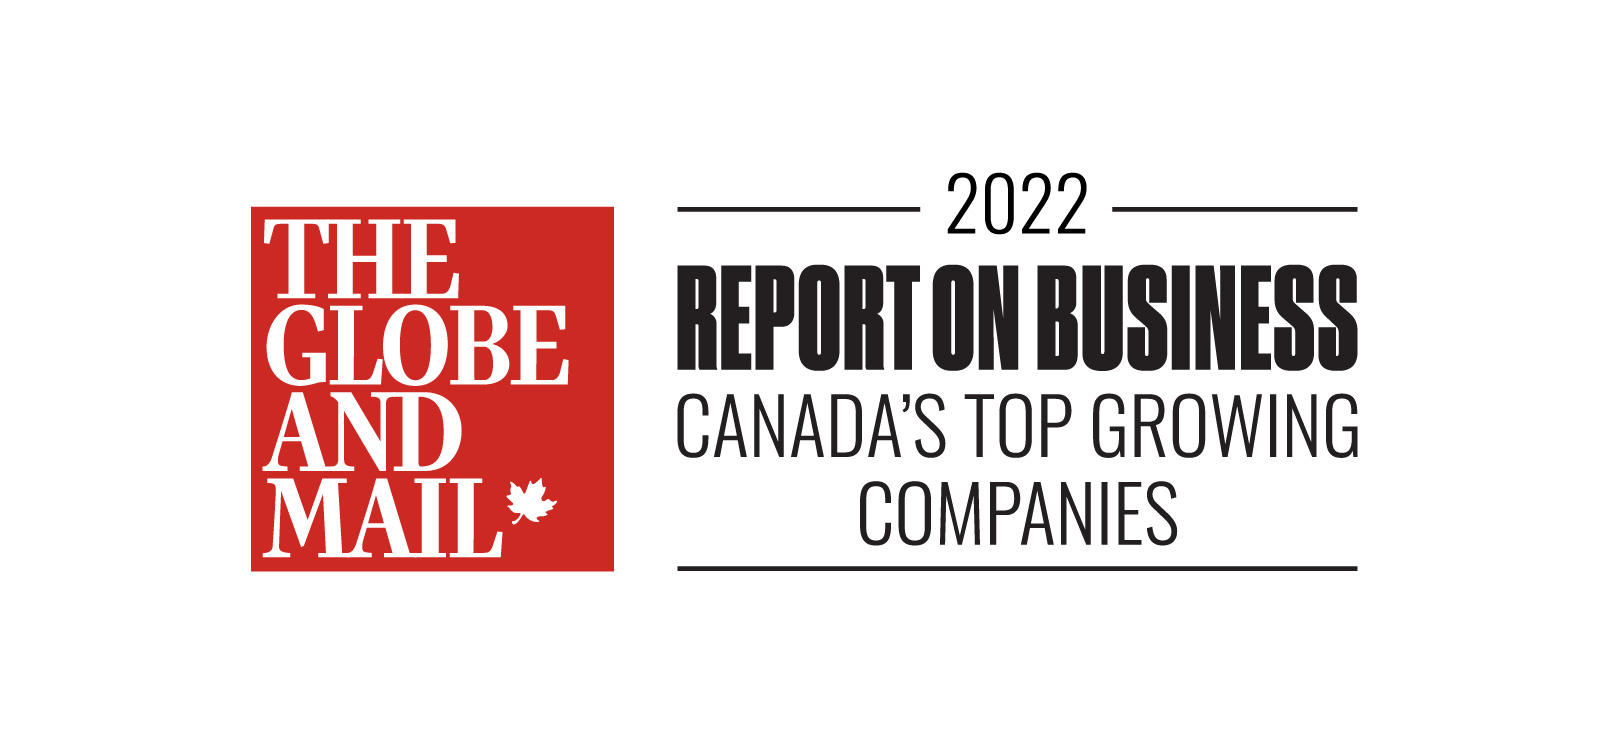 《环球邮报》的标志显示在图片的左边。图片右侧写着:2022年加拿大商业增长最快的公司报告。